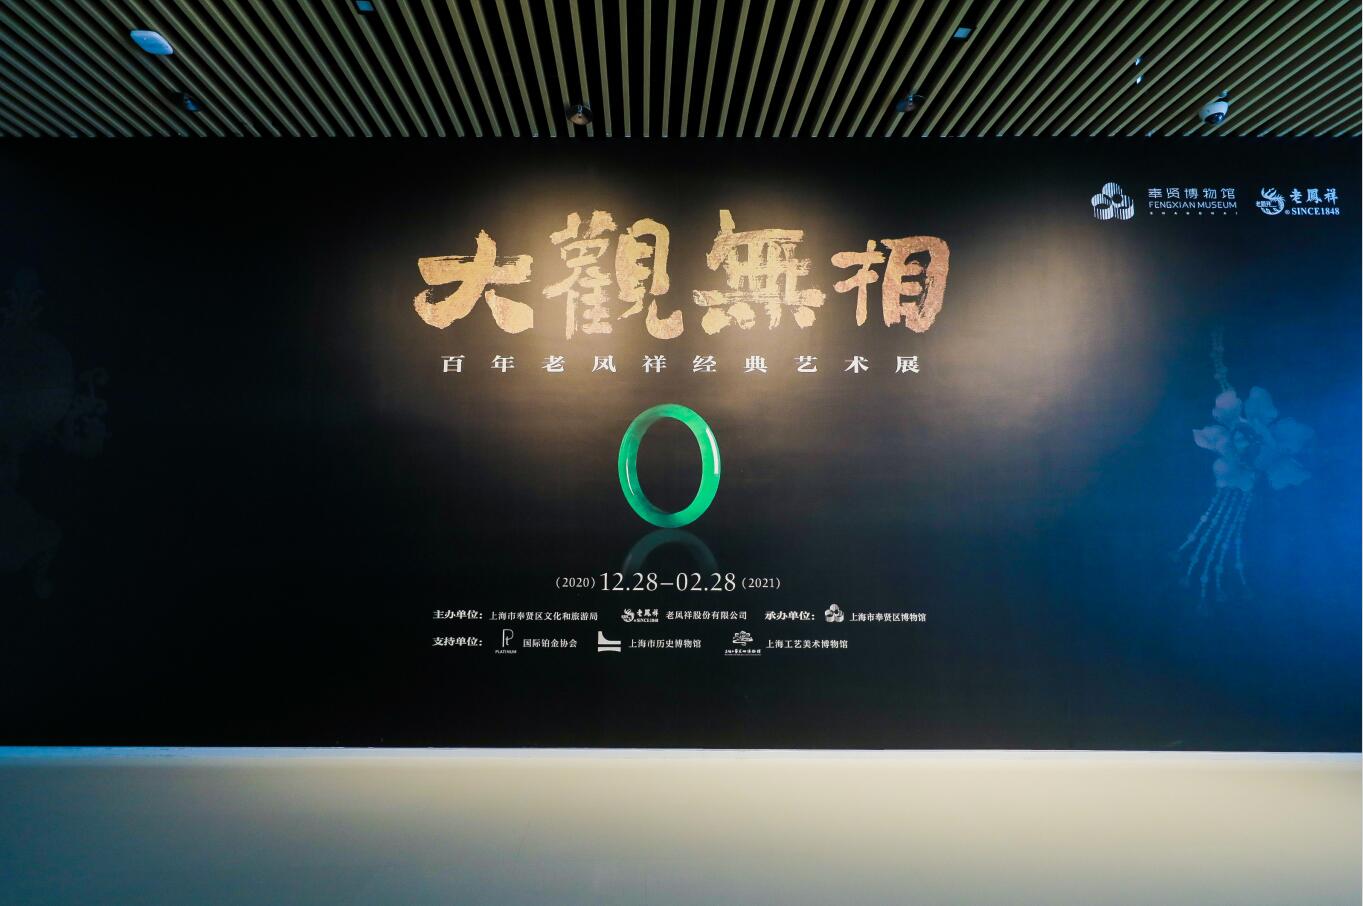 《大观无相——百年老凤祥经典艺术展》在奉贤博物馆盛大开幕